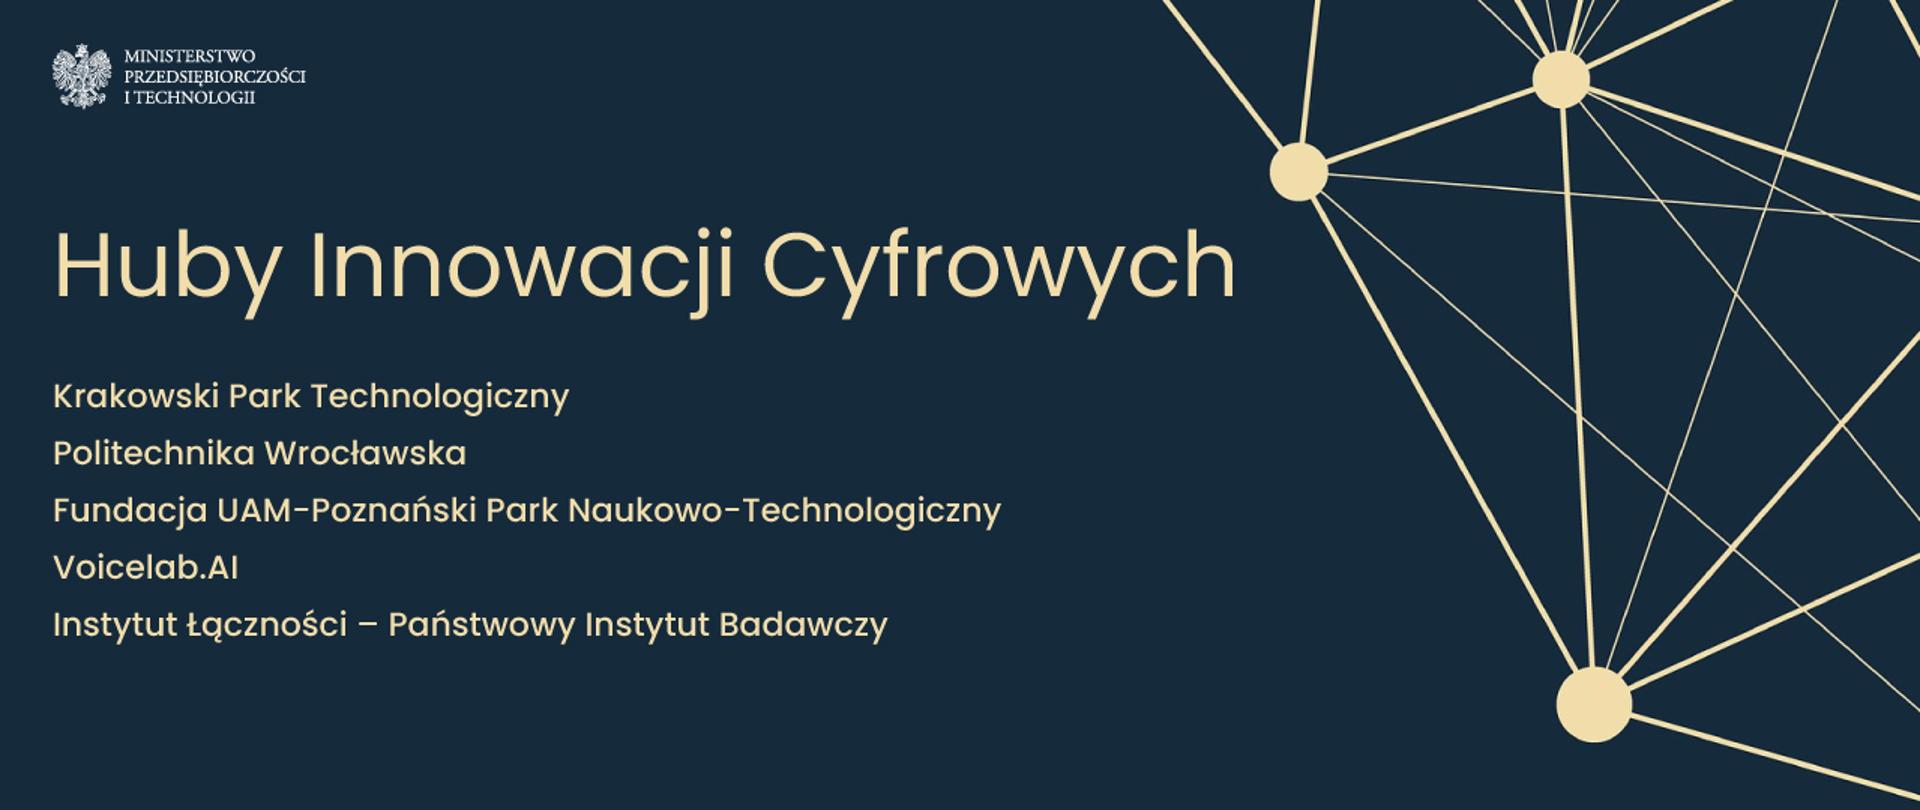 Krakowski Park Technologiczny, Politechnika Wrocławska, Fundacja UAM-Poznański Park Naukowo-Technologiczny, Voicelab.AI oraz Instytut Łączności – Państwowy Instytut Badawczy – to liderzy wyłonionych przez MPiT Hubów Innowacji Cyfrowych.